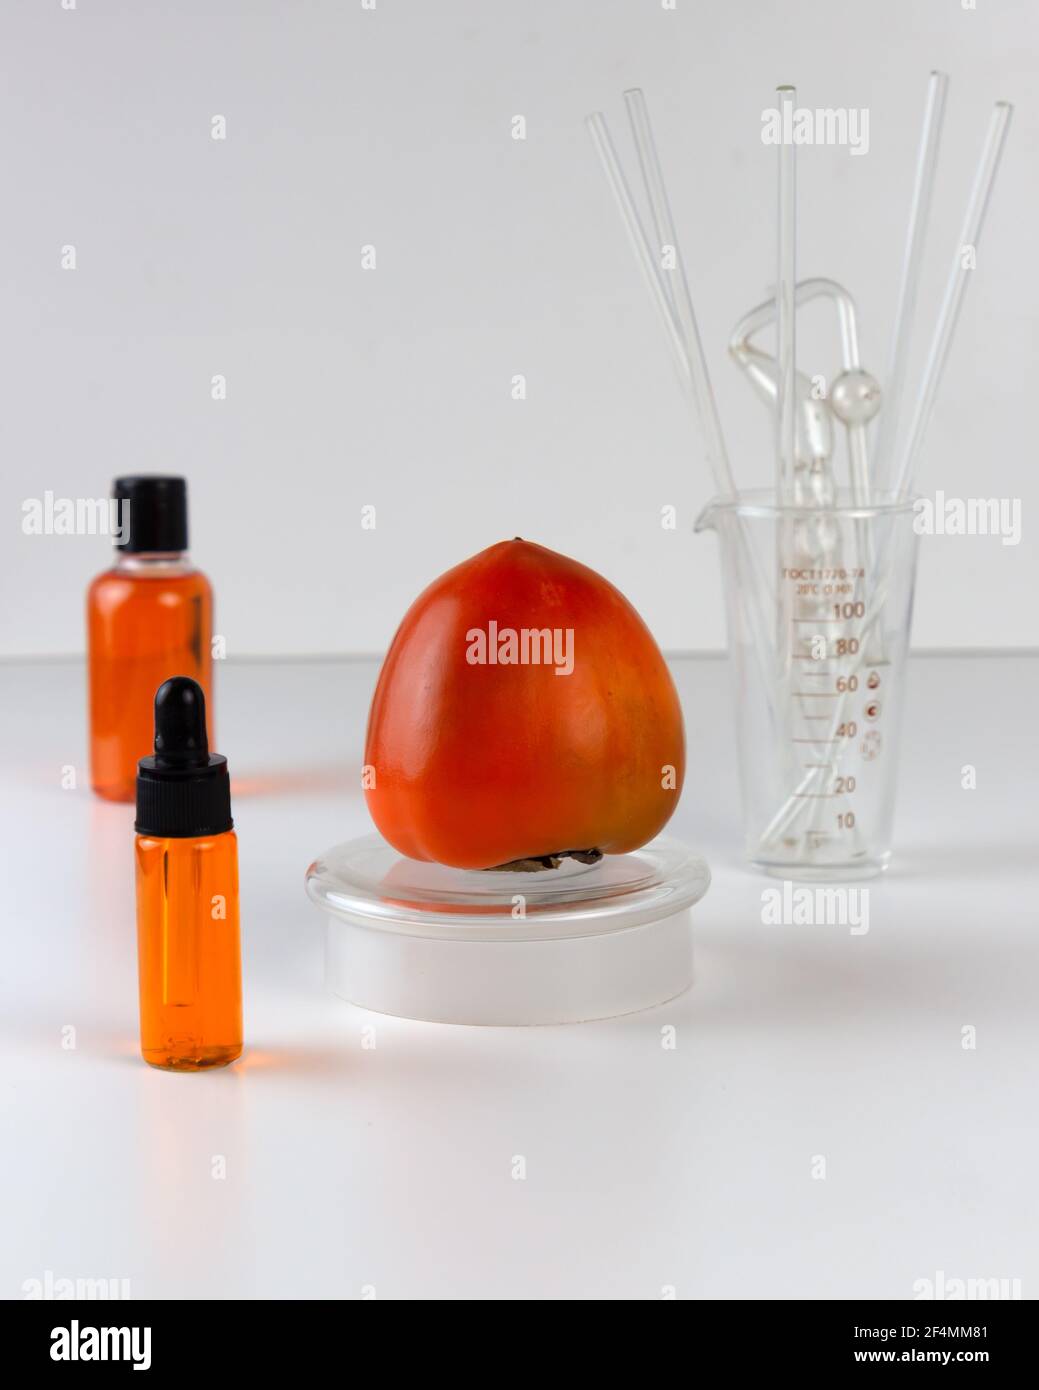 Reife Bio-Persimmonfrucht und Persimmonextrakt in Kosmetikflasche mit Tropf. Abstraktes chemisches oder kosmetisches Labor. Stockfoto